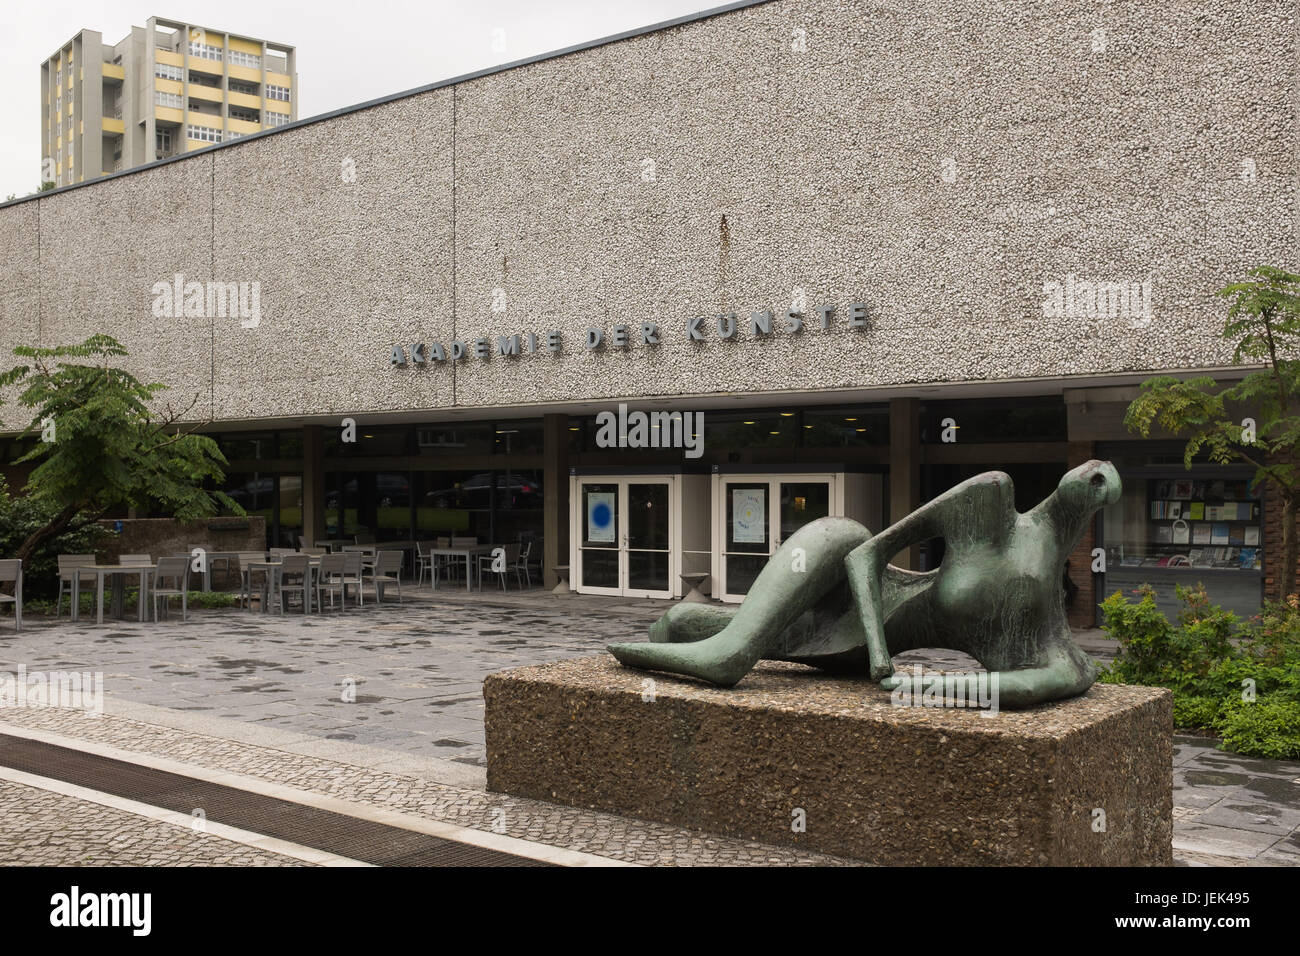 BERLIN, 23 juin : le 'Akademie der Kunste" (en allemand pour l'Academy of Arts) et 'Die Liegende sculpture' à Berlin le 23 juin 2017. Banque D'Images